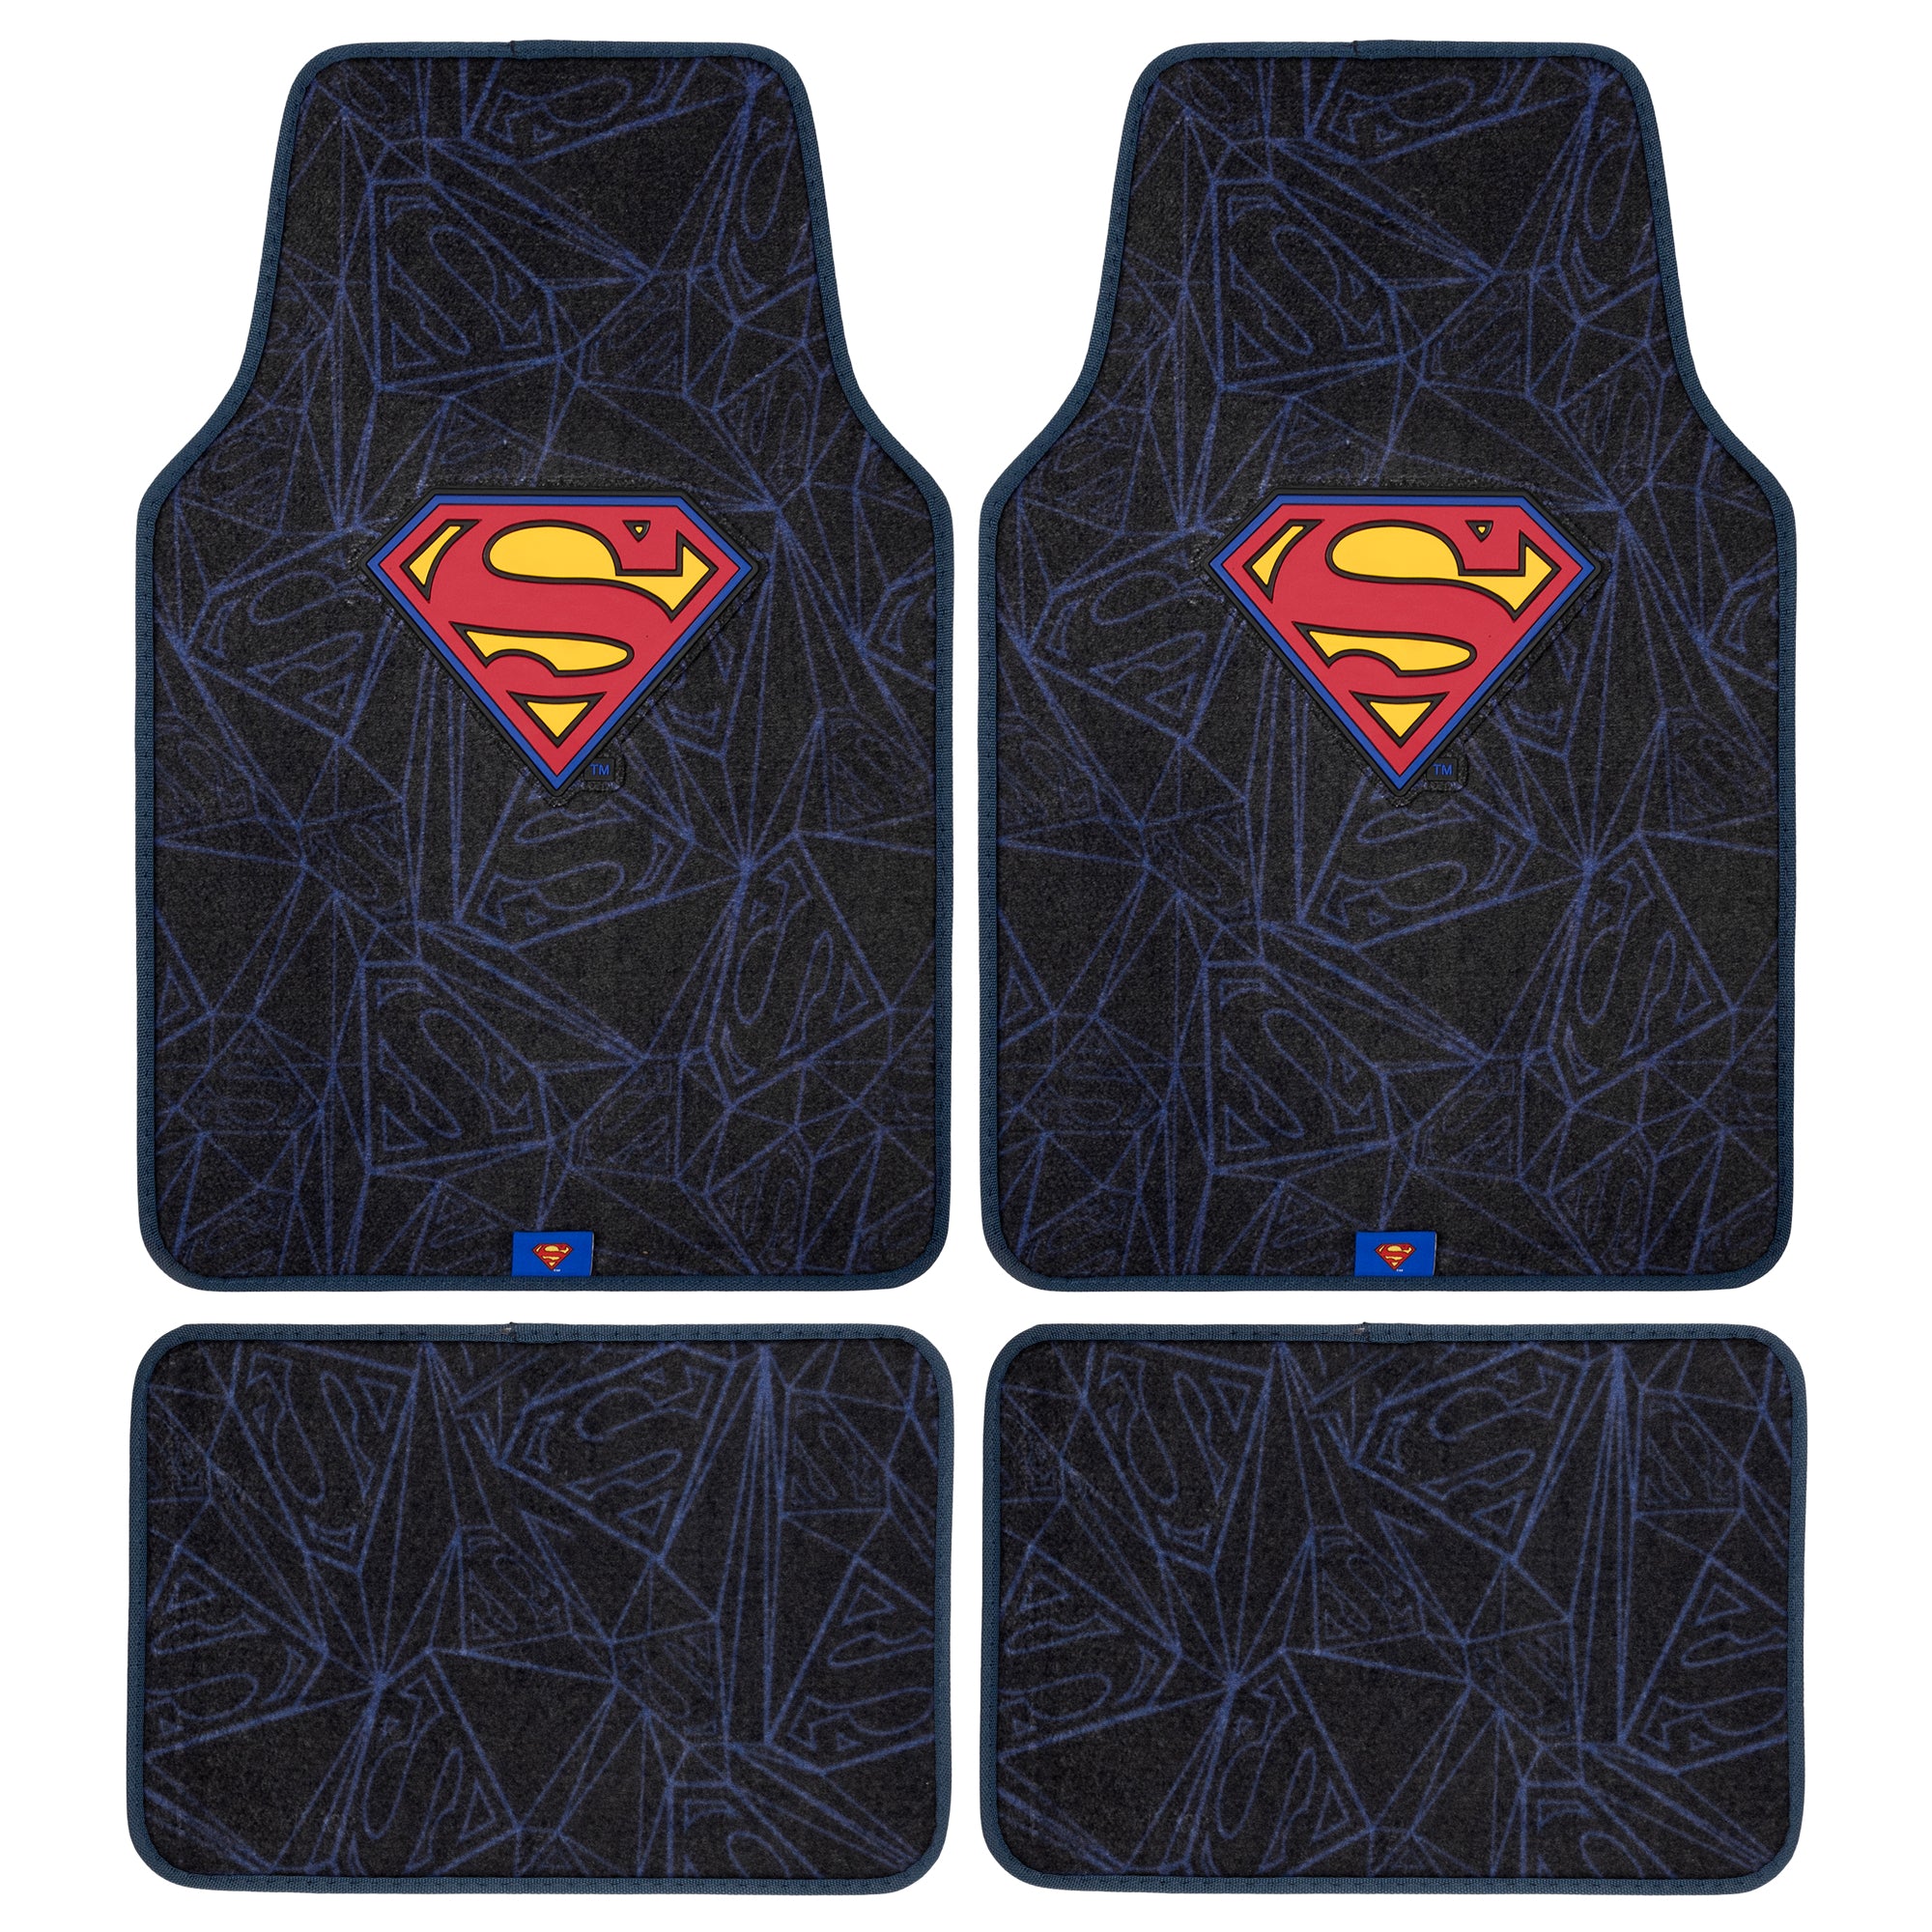 Superman Carpet Car Floor Mats, DC Comics Design, for Car, Truck, SUV - Comfortable, No Slip Nib Backing, Unique Full Print, Protects Car Floor